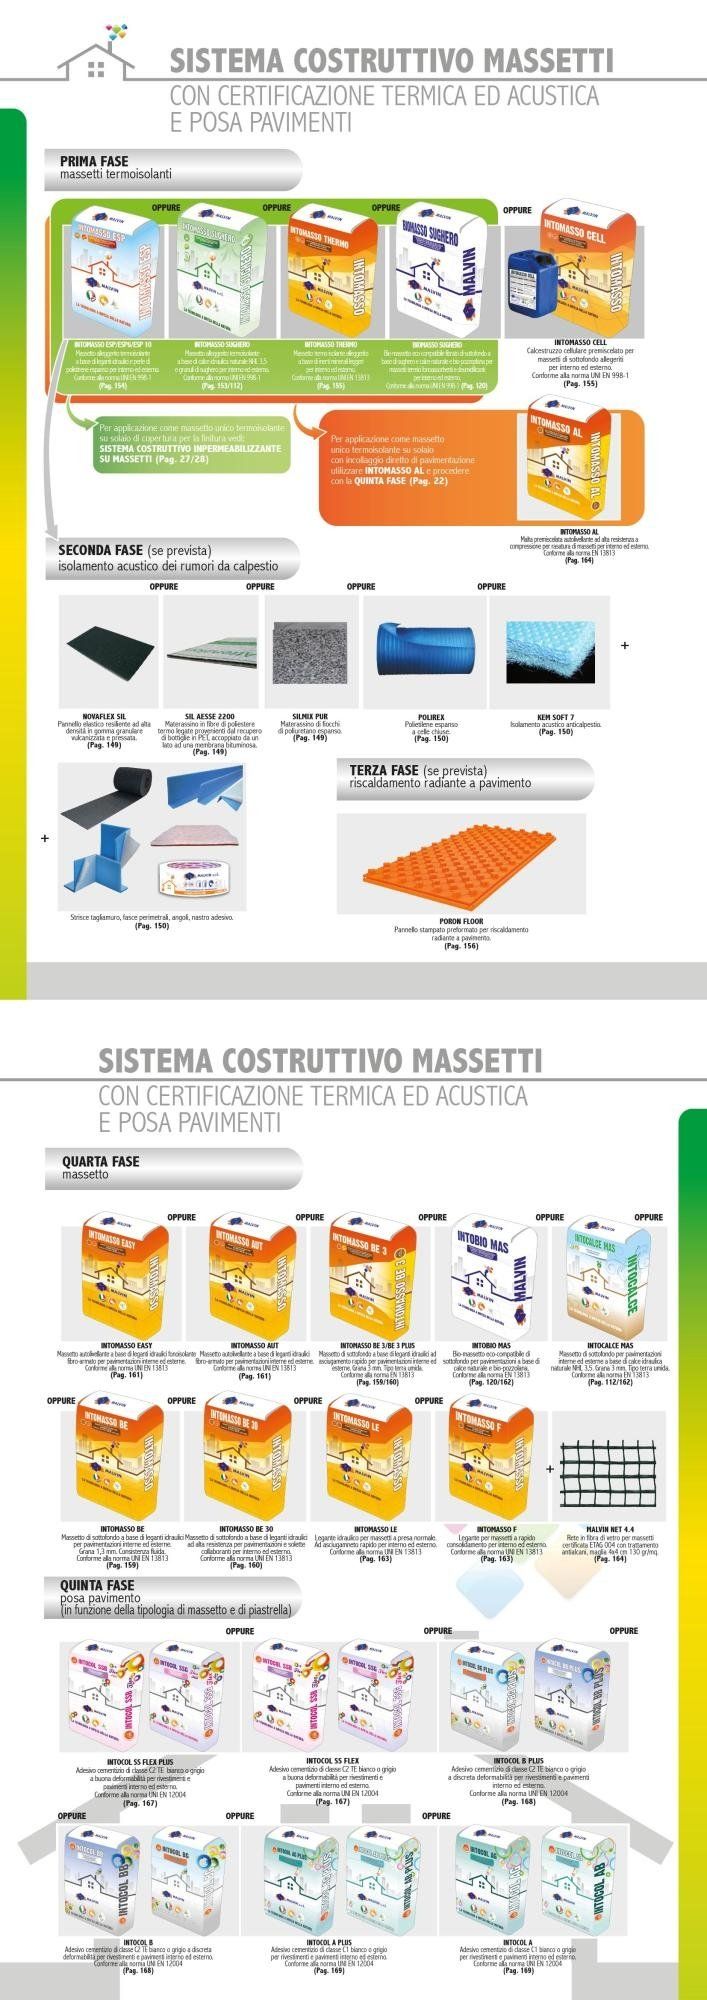 Sistema Costruttivo Massetti con Certificazione Termica ed Acustica e Posa Pavimenti